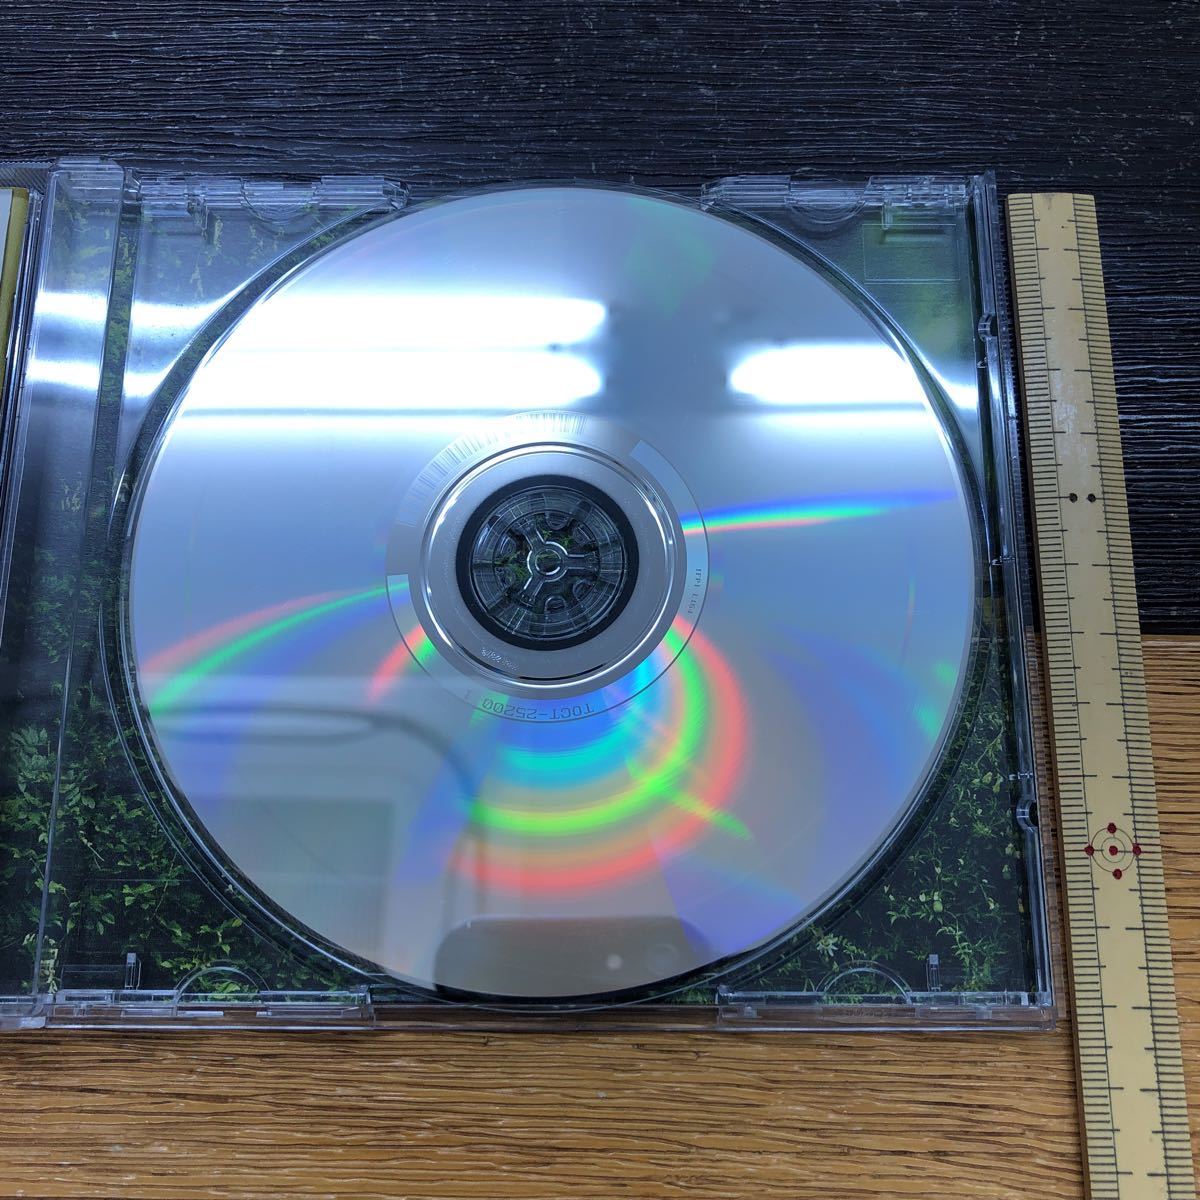 CD 矢井田瞳 Air/Cook/Sky アルバムCD 11曲入り_画像4